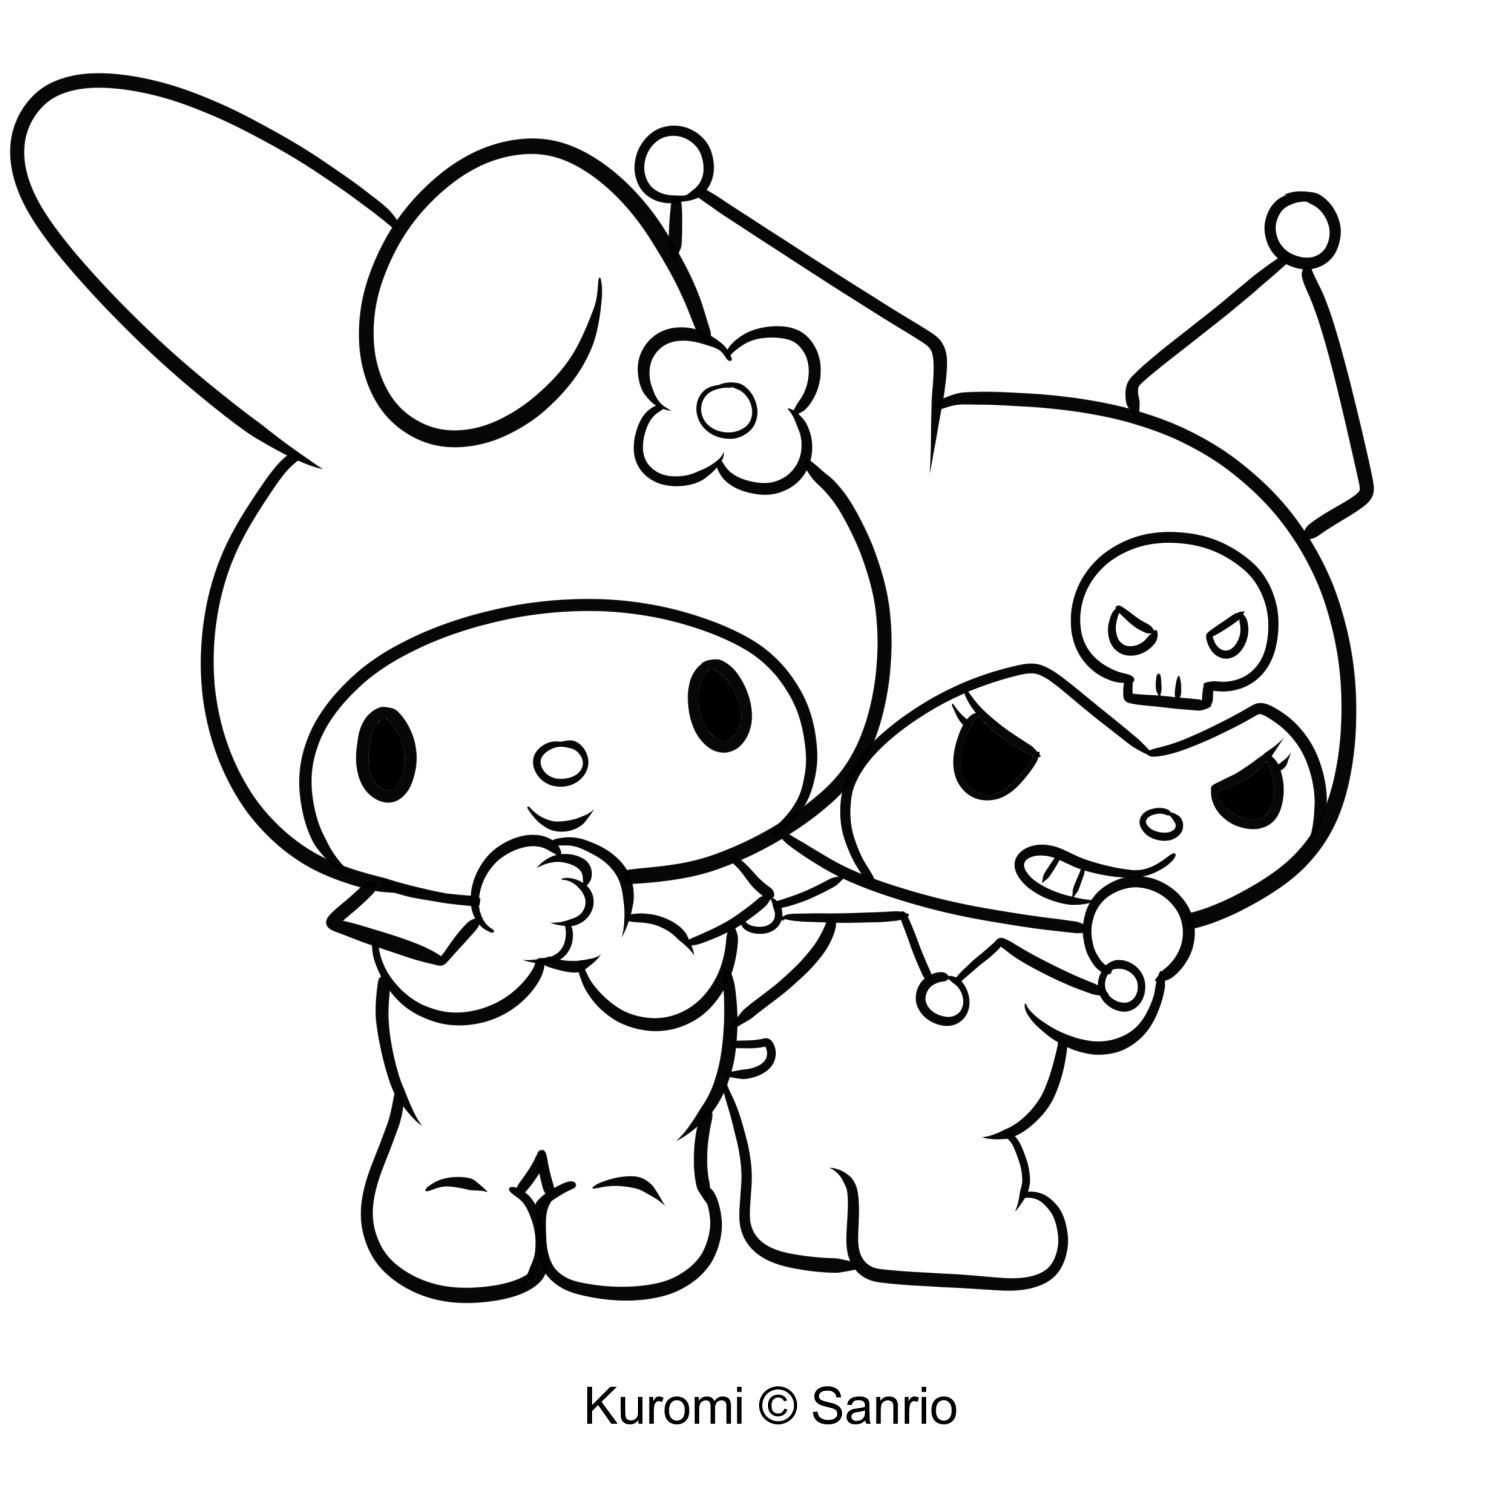 Debuxo de Kuromi 22 de My Melody para imprimir e colorear